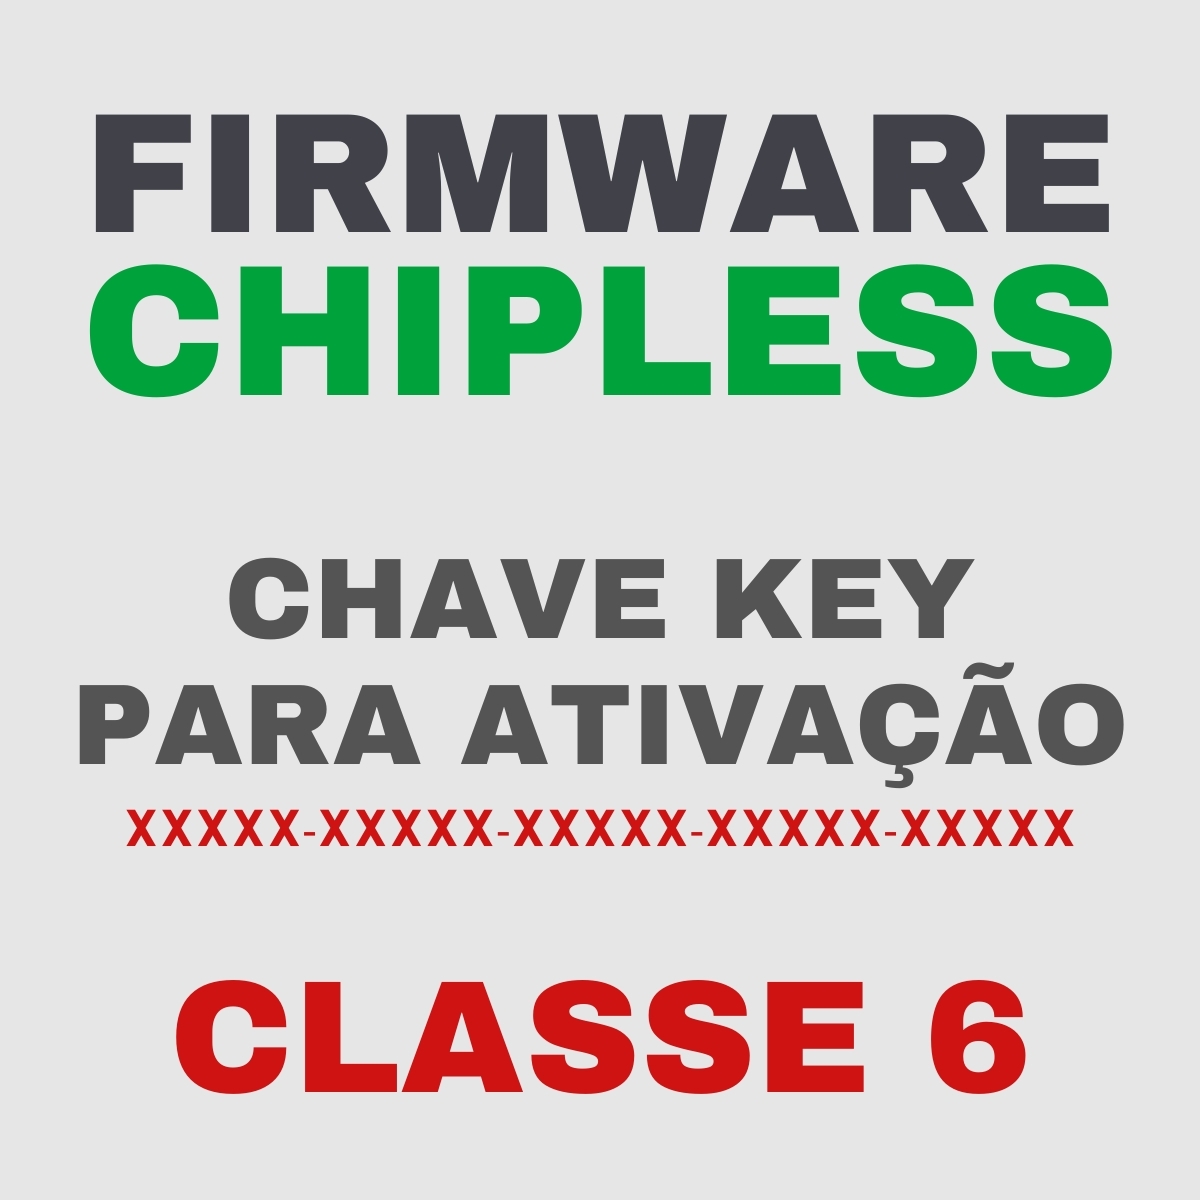 Chave Key de Ativação Firmware ChipLess para Impressora Epson - Classe 6